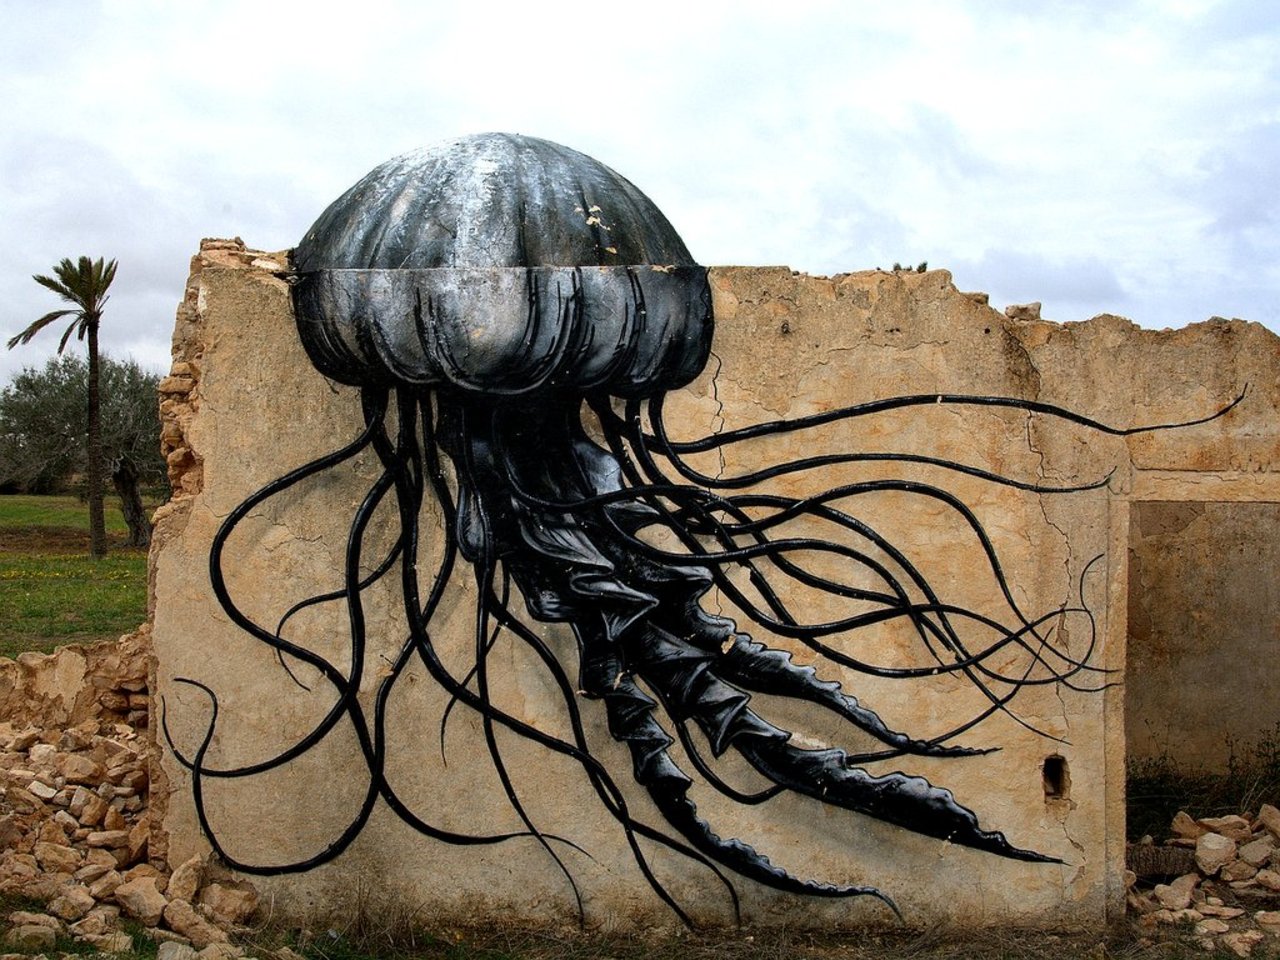 Street Art by roa in # http://www.urbacolors.com #art #mural #graffiti #streetart https://t.co/3YcN1YM7cH